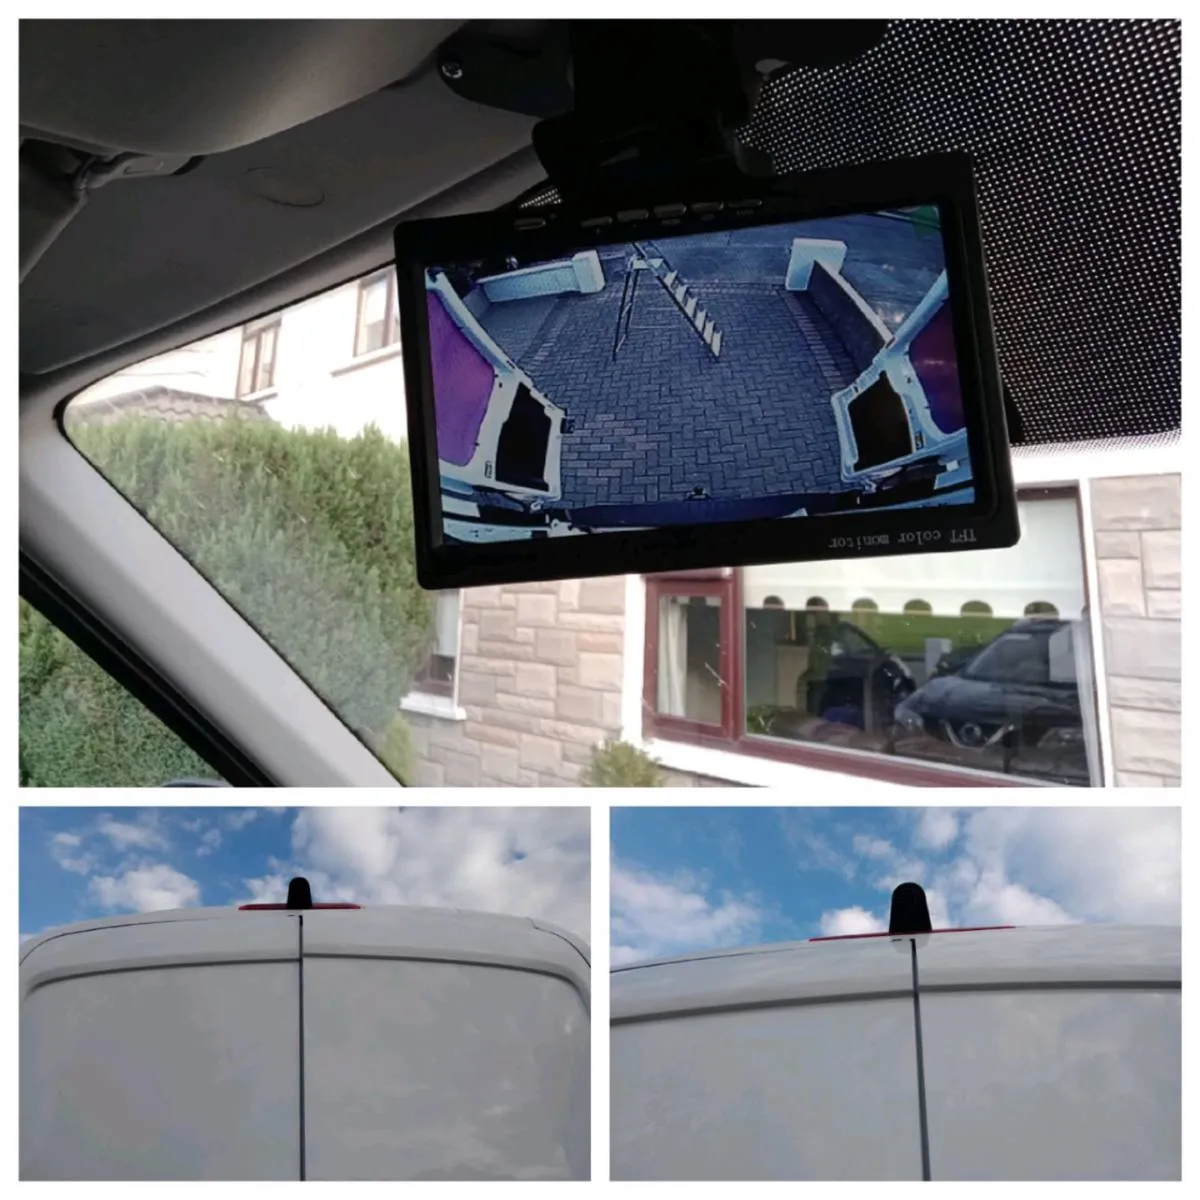 VAN Parking Sensors Reversing Cameras Installation